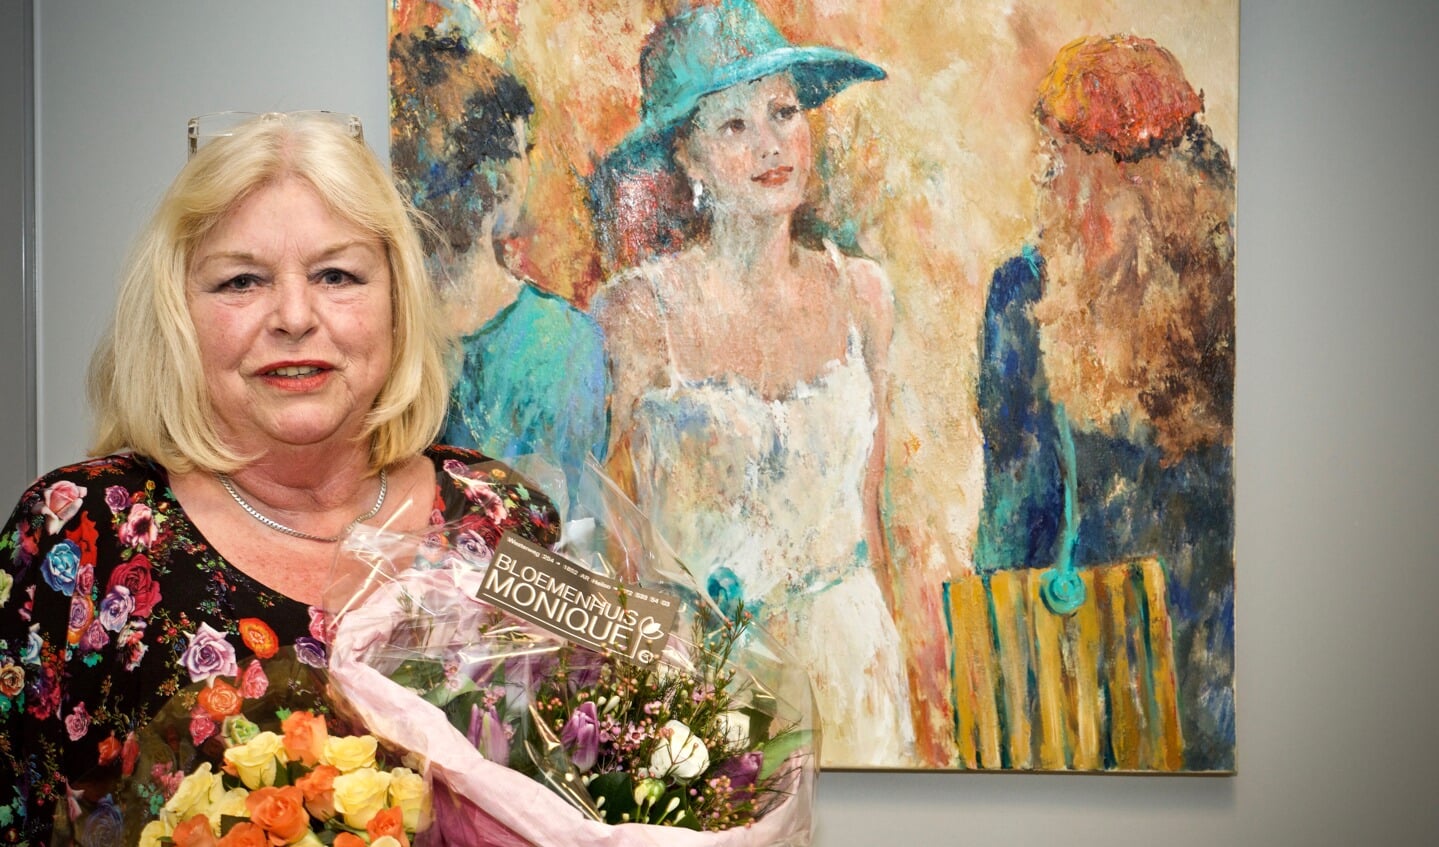 Irma van der Zande voor haar winnende schilderij.
Foto: Stip Fotografie